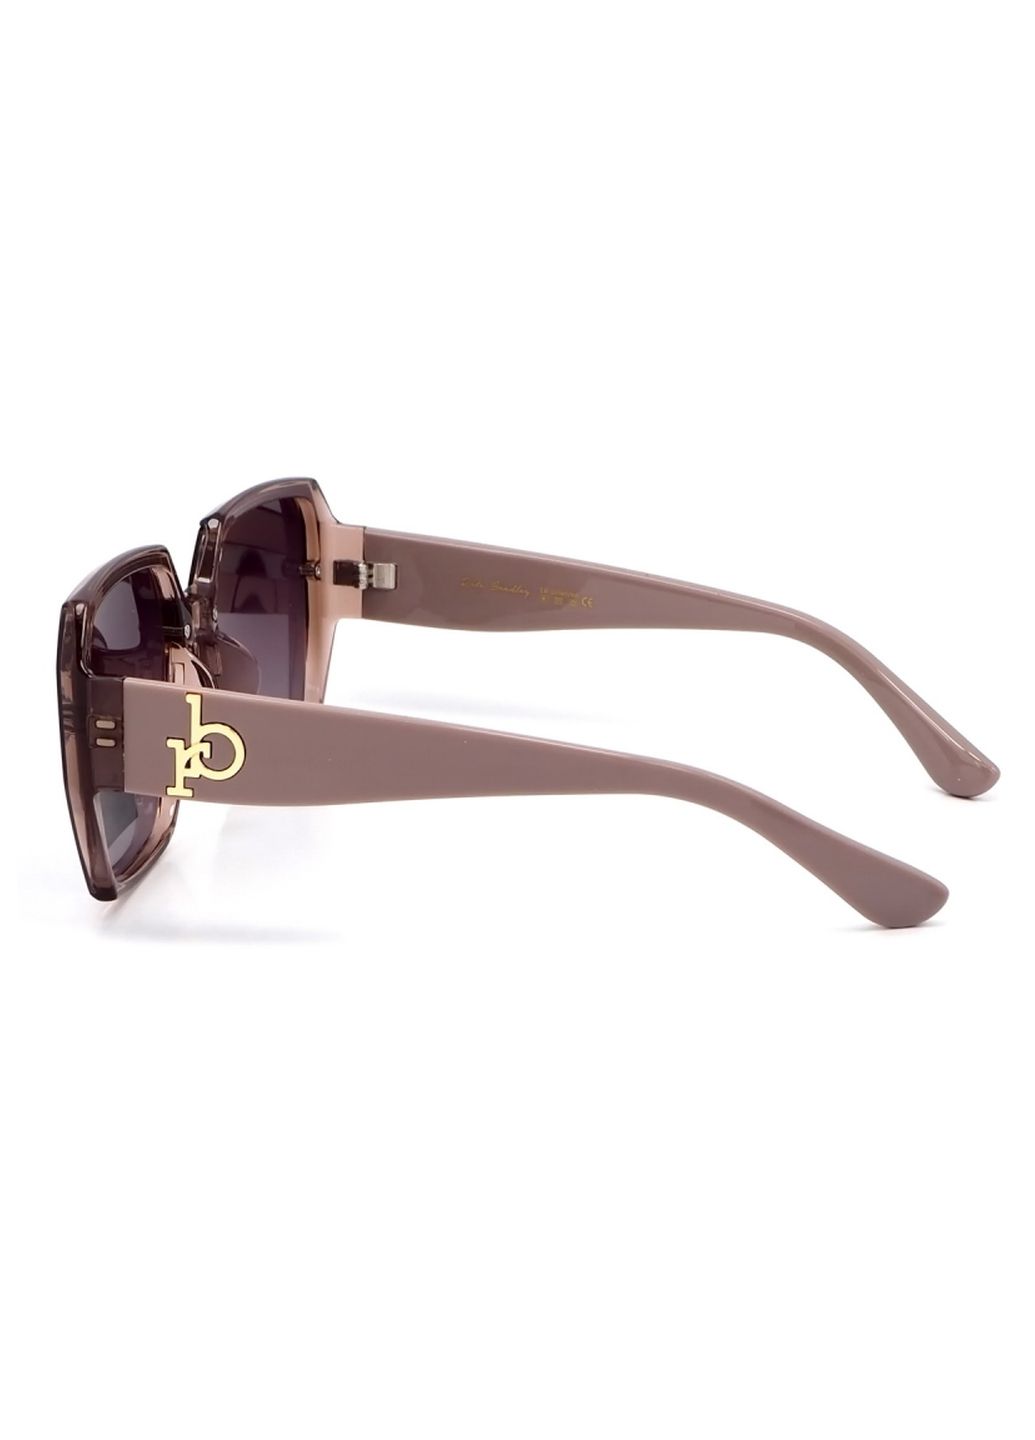 Купить Женские солнцезащитные очки Rita Bradley с поляризацией RB722 112034 в интернет-магазине